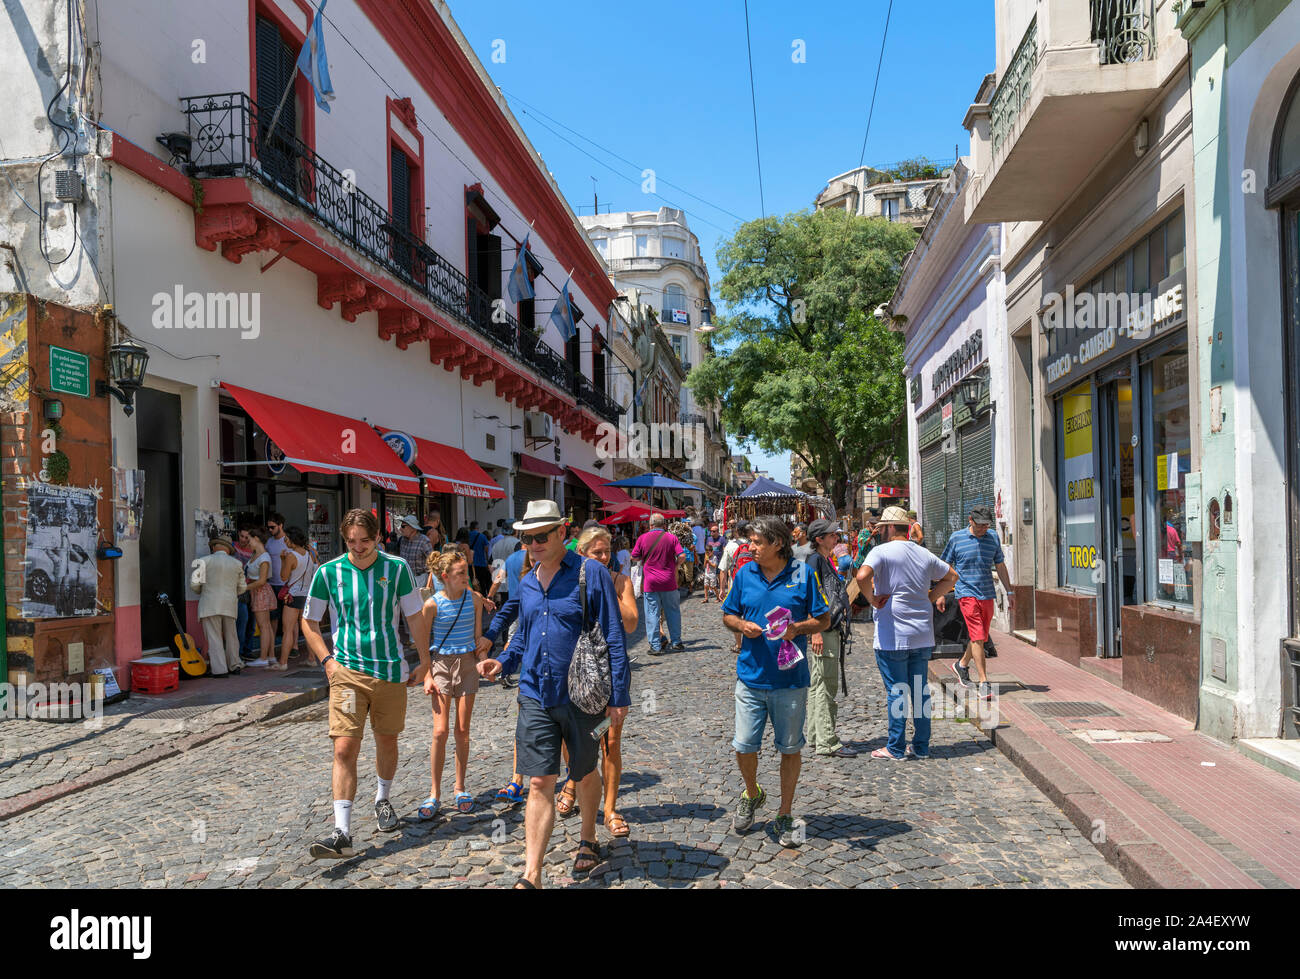 Defensa, einer kopfsteingepflasterten Straße im Stadtteil San Telmo, Buenos Aires, Argentinien Stockfoto